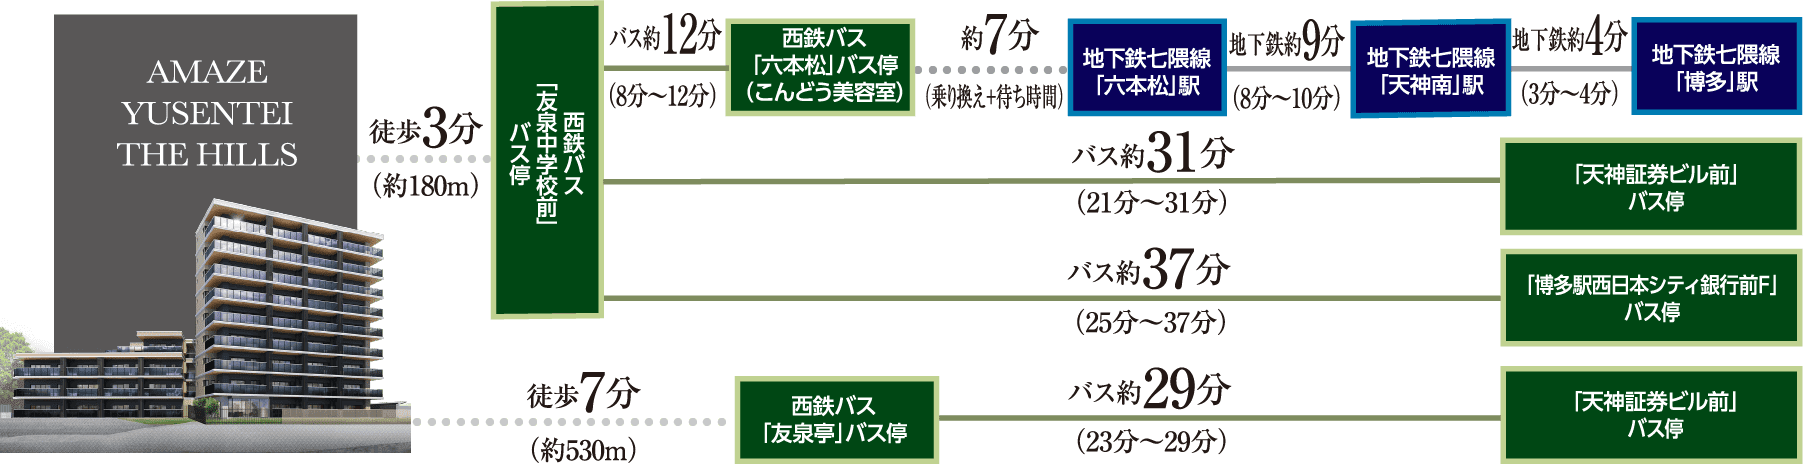 アメイズ友泉亭へのアクセスマップ